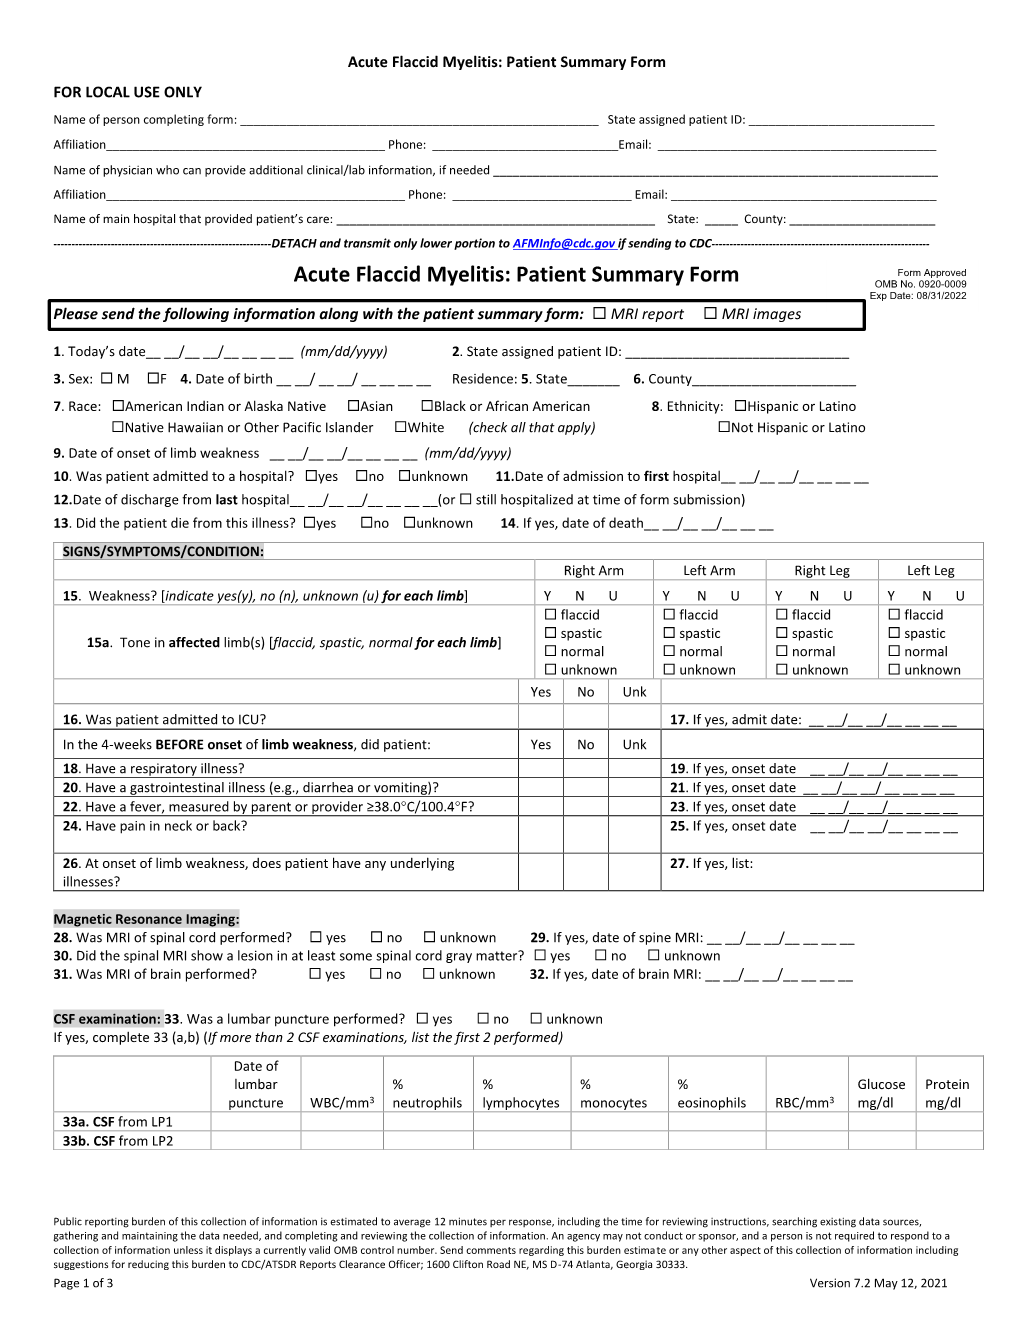 Acute Flaccid Myelitis Patient Summary Form